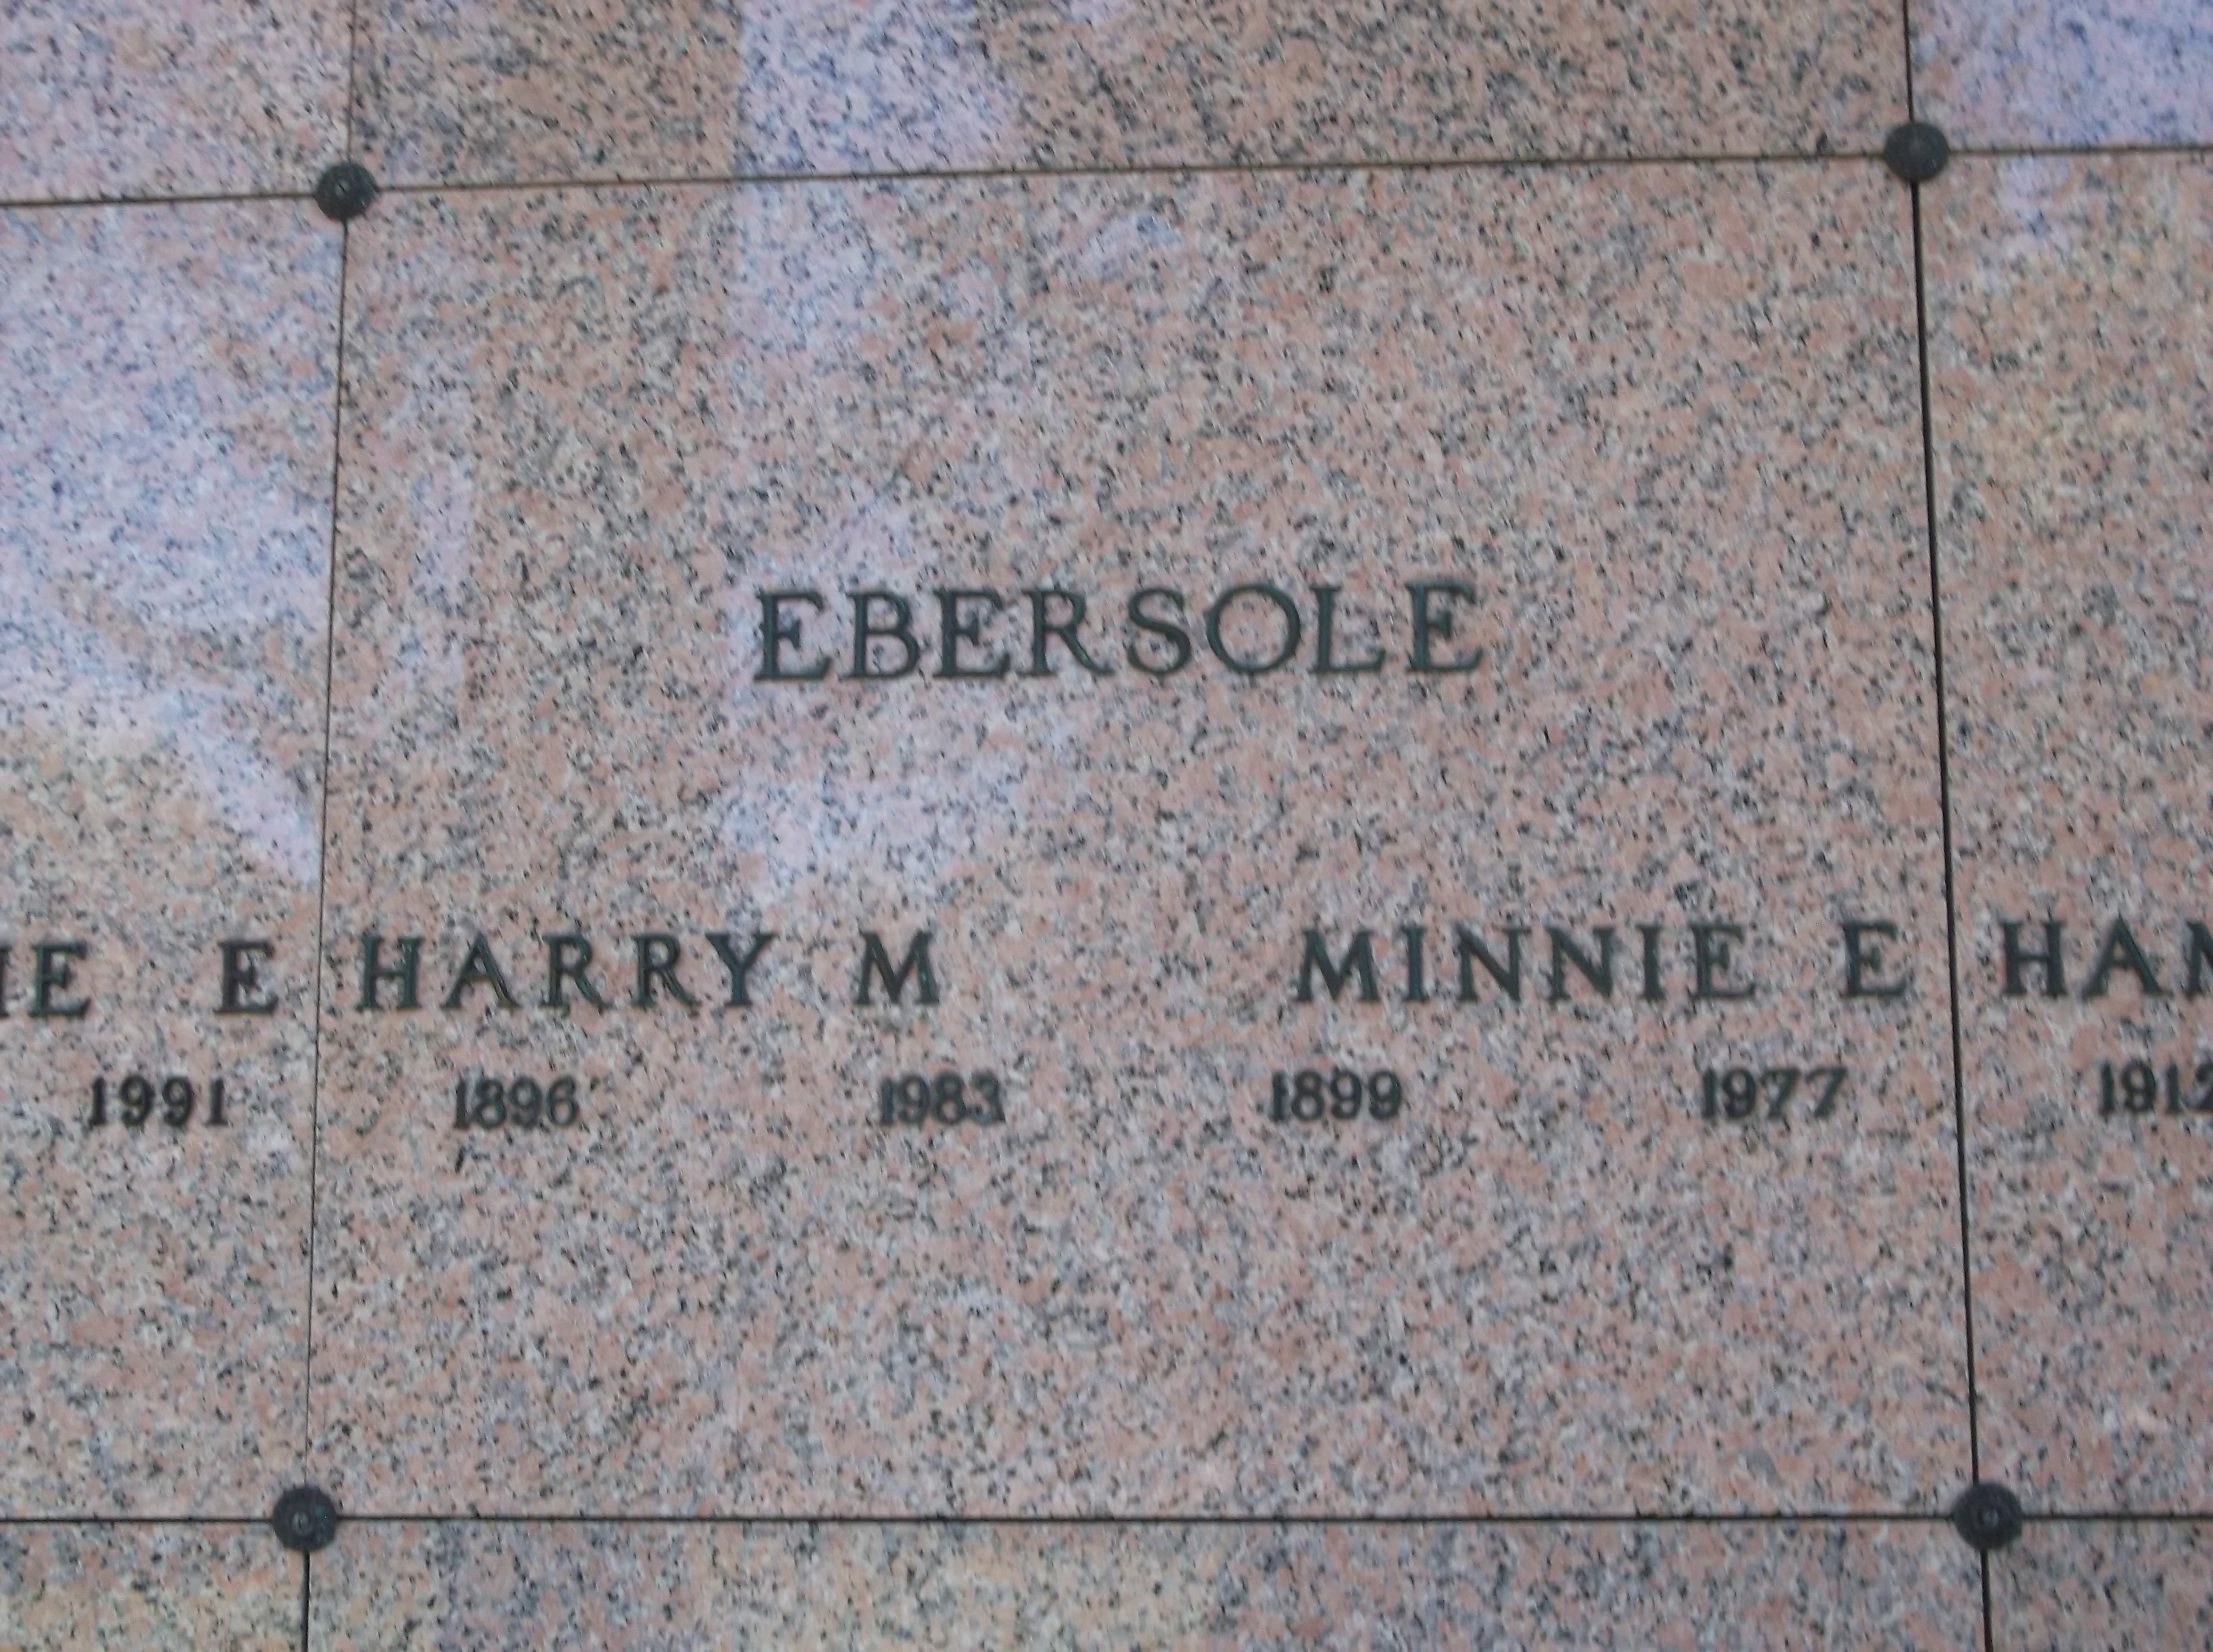 Harry M Ebersole